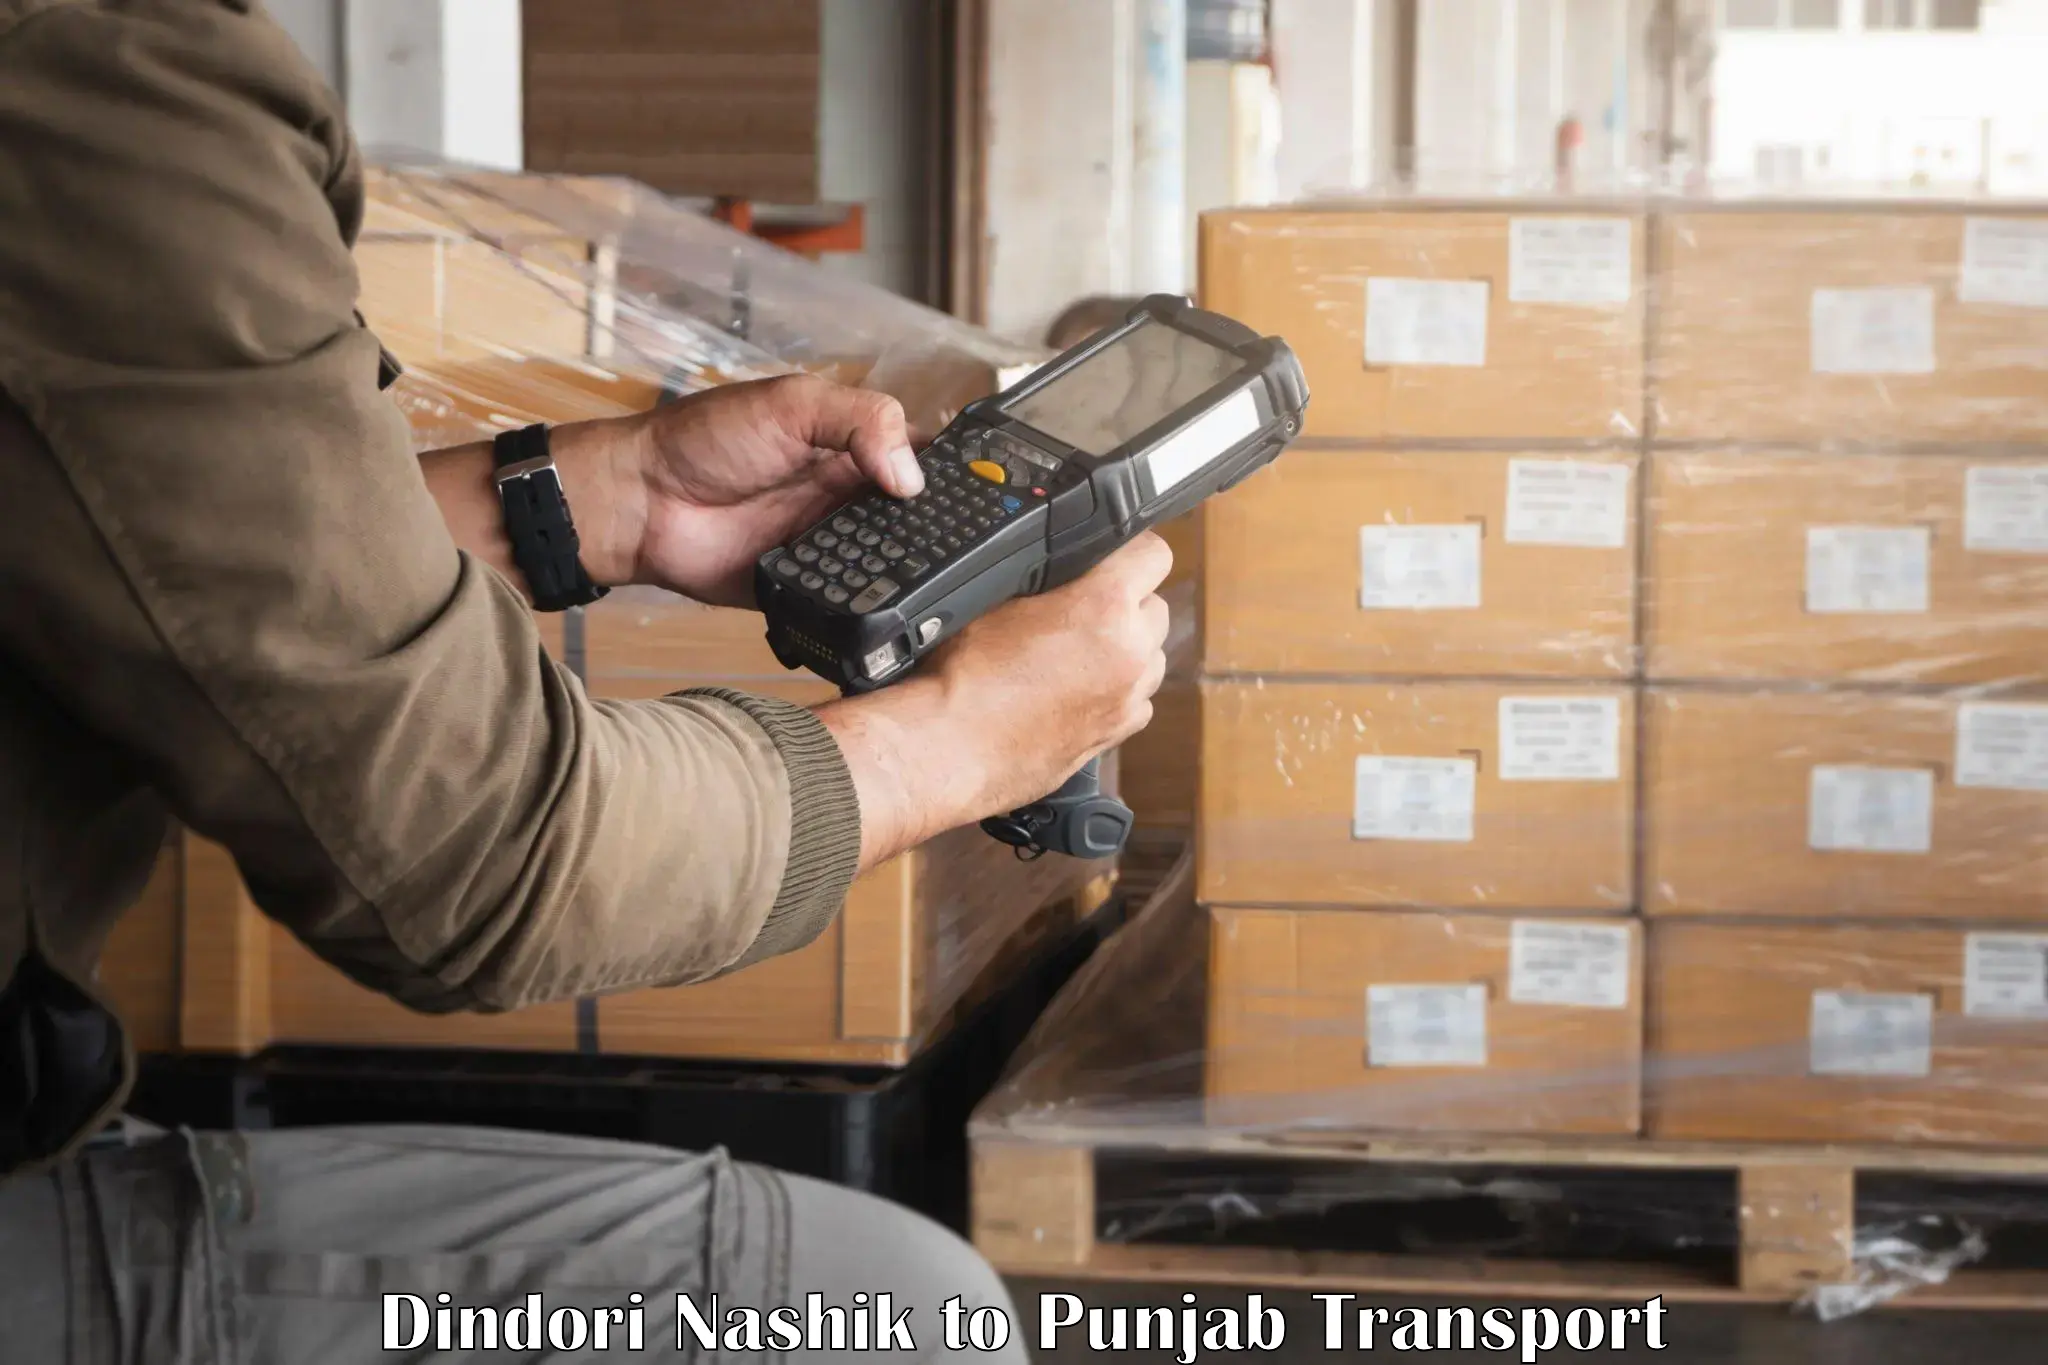 Commercial transport service Dindori Nashik to Dinanagar